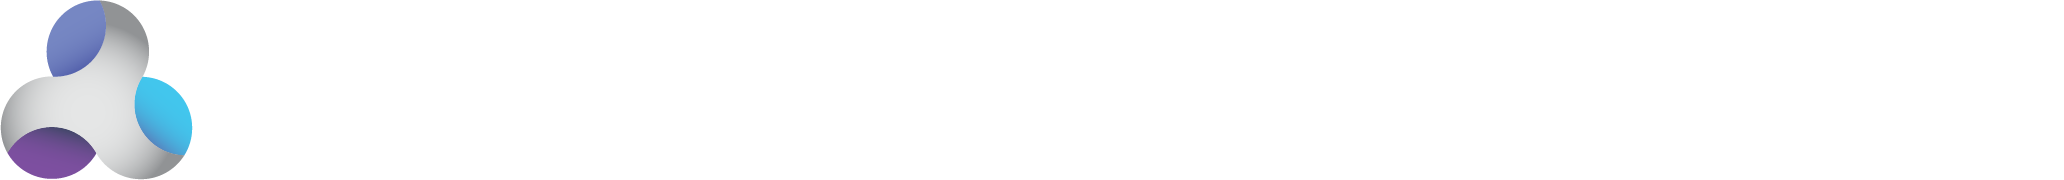 לוגו האוניברסיטה הפתוחה, לוגו המרח"ב הדיגיטלי